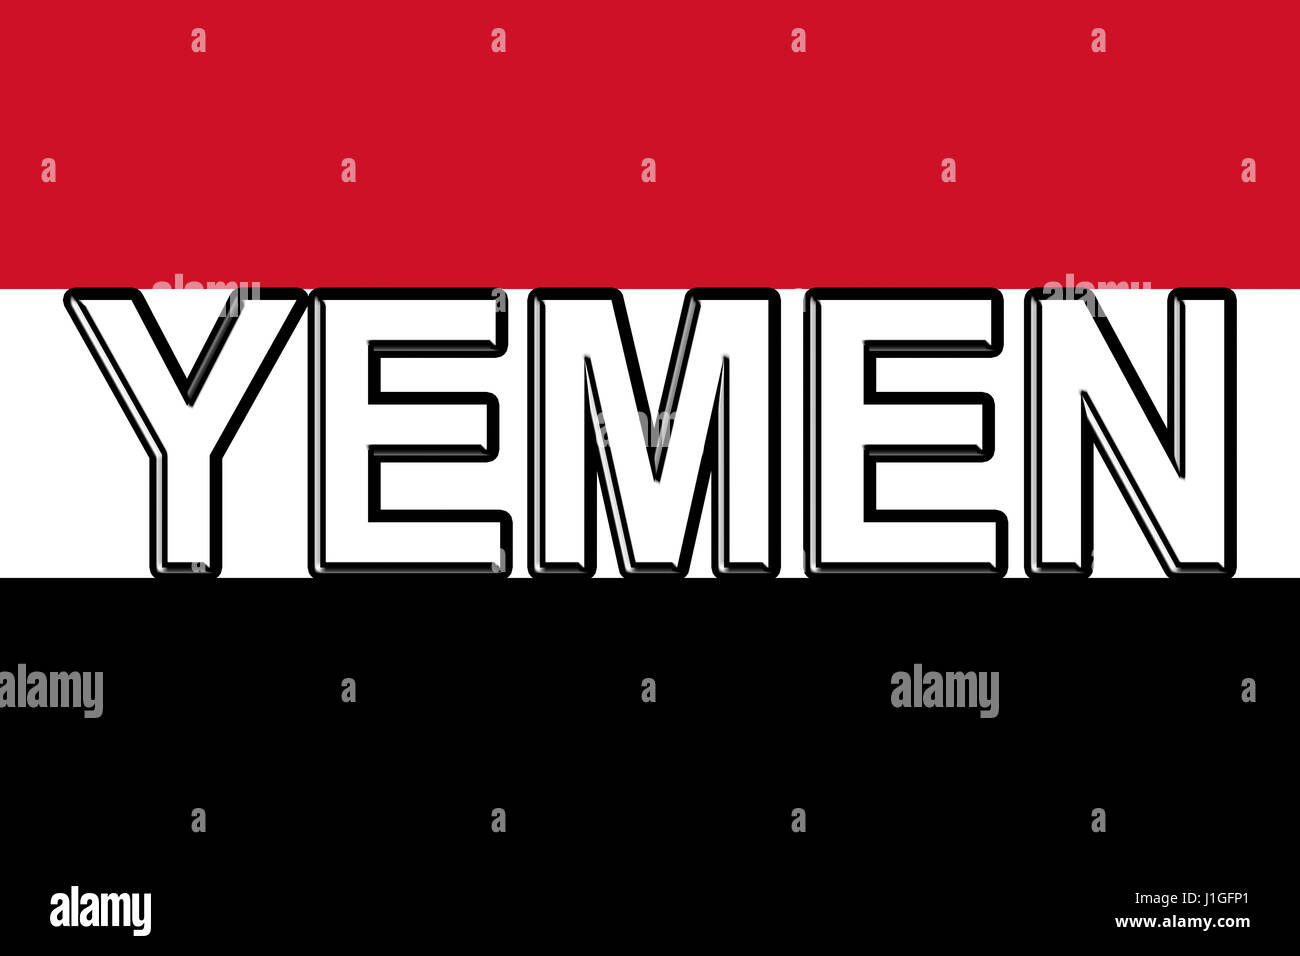 Abbildung der Flagge des Jemen mit dem Land auf die Fahne geschrieben. Stockfoto